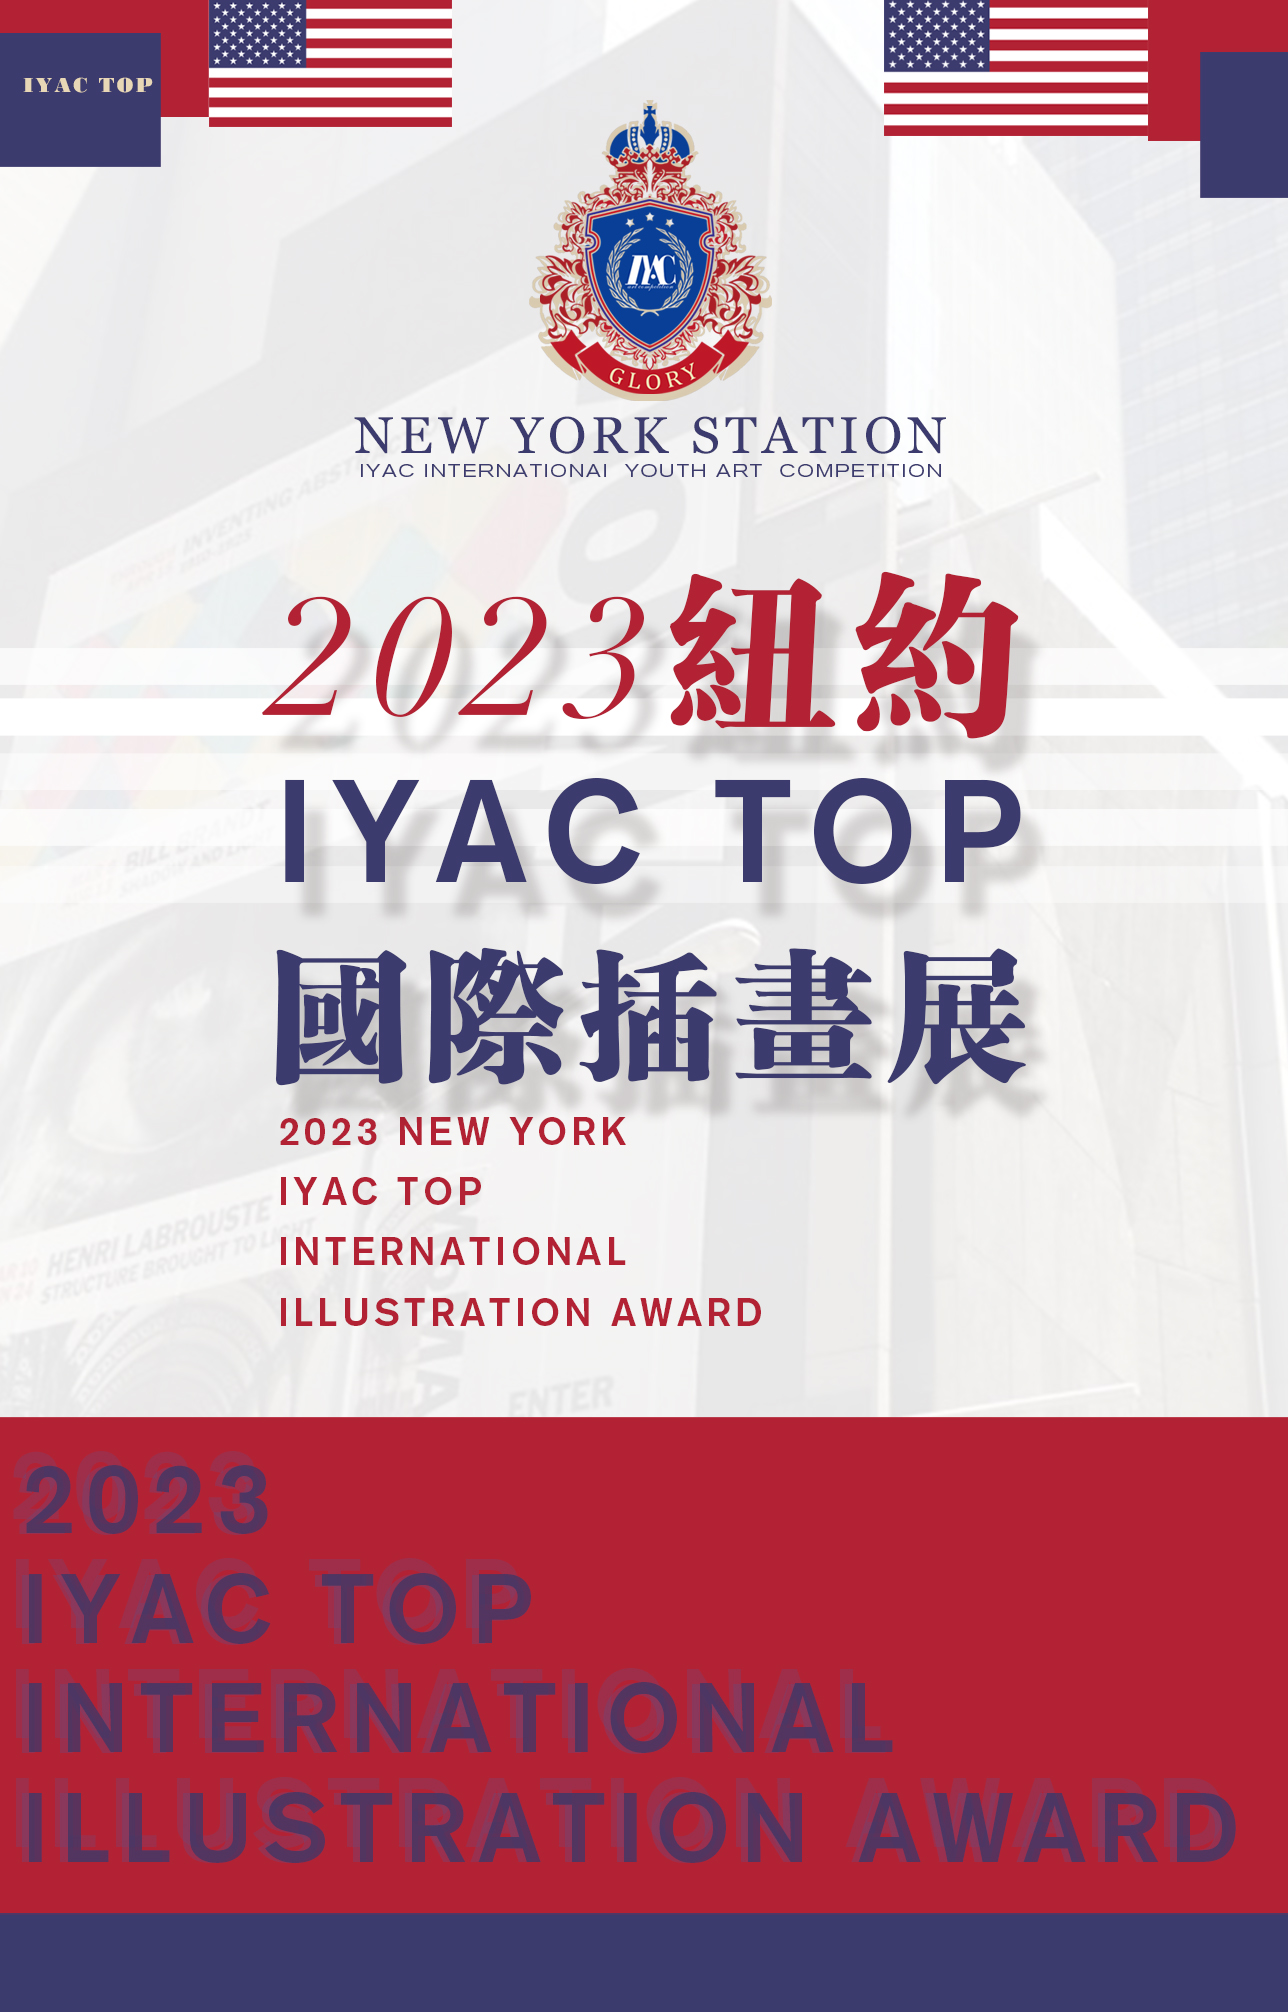 全球征稿丨丨2023纽约IYAC TOP国际插画赛